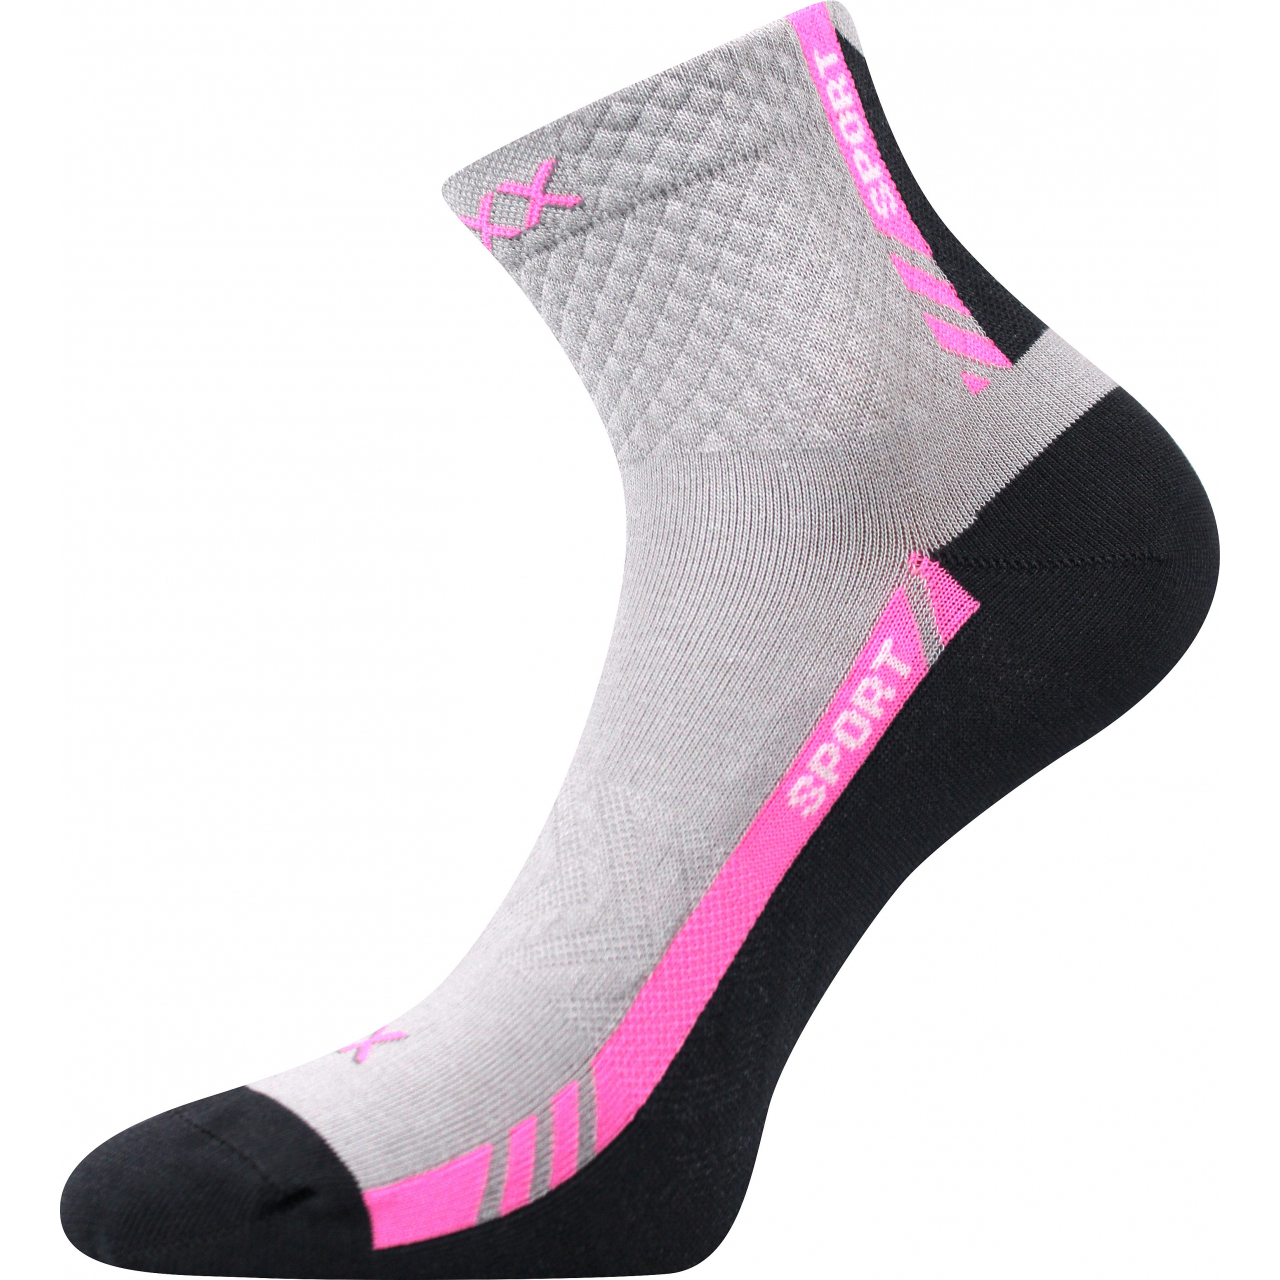 Ponožky slabé sportovní unisex Voxx Pius - světle šedé-růžové, 39-42